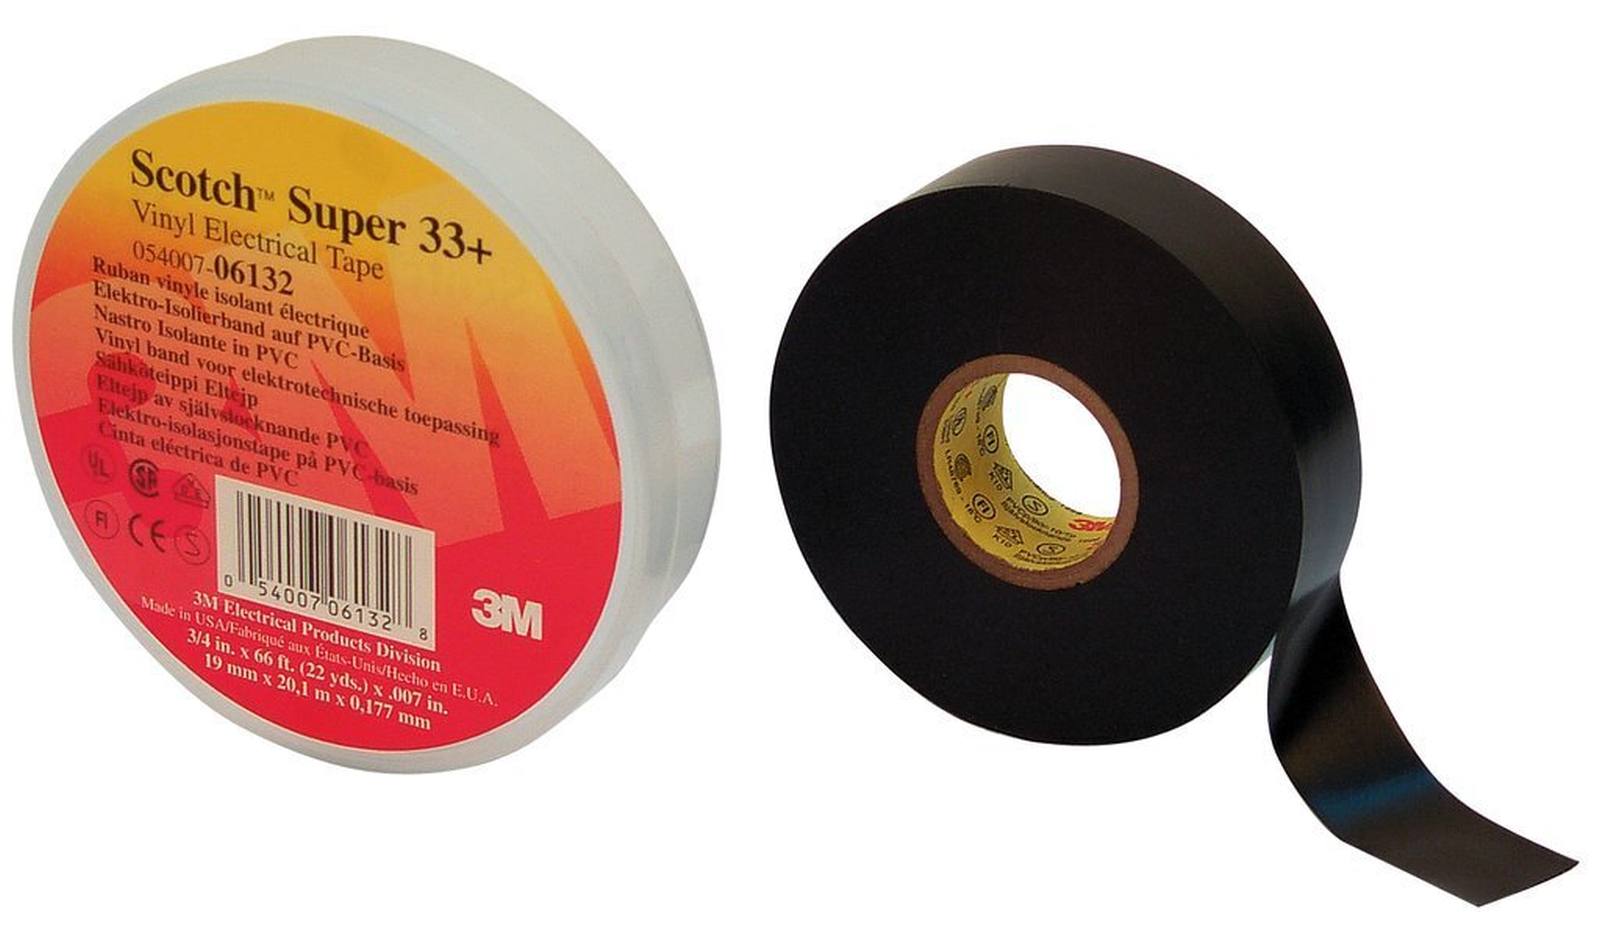 3M Scotch Super 33+ vinyl electrical insulating tape, black, 50 mm x 33 m, 0.18mm